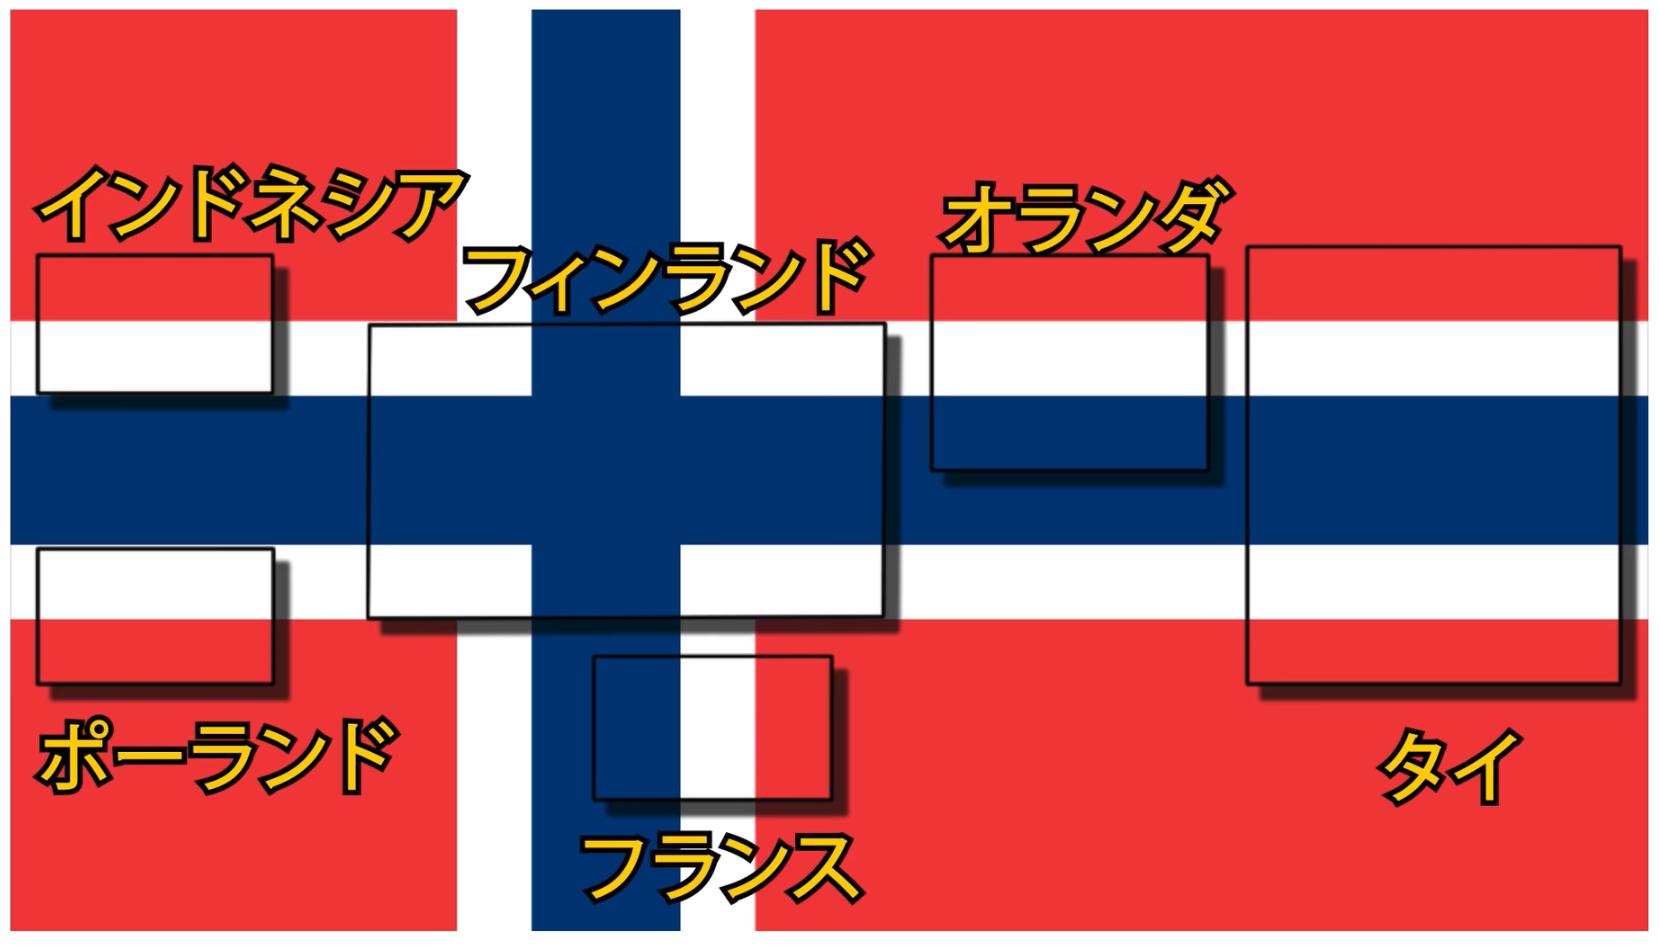 宮路秀作 新刊 おもしろすぎる地理 は10 08発行 ノルウェーの国旗には 6か国の国旗が隠れているとのこと なるほど そういうことか 面白いね Youtubeで見つけた雑学です T Co Nvypglesxk Twitter